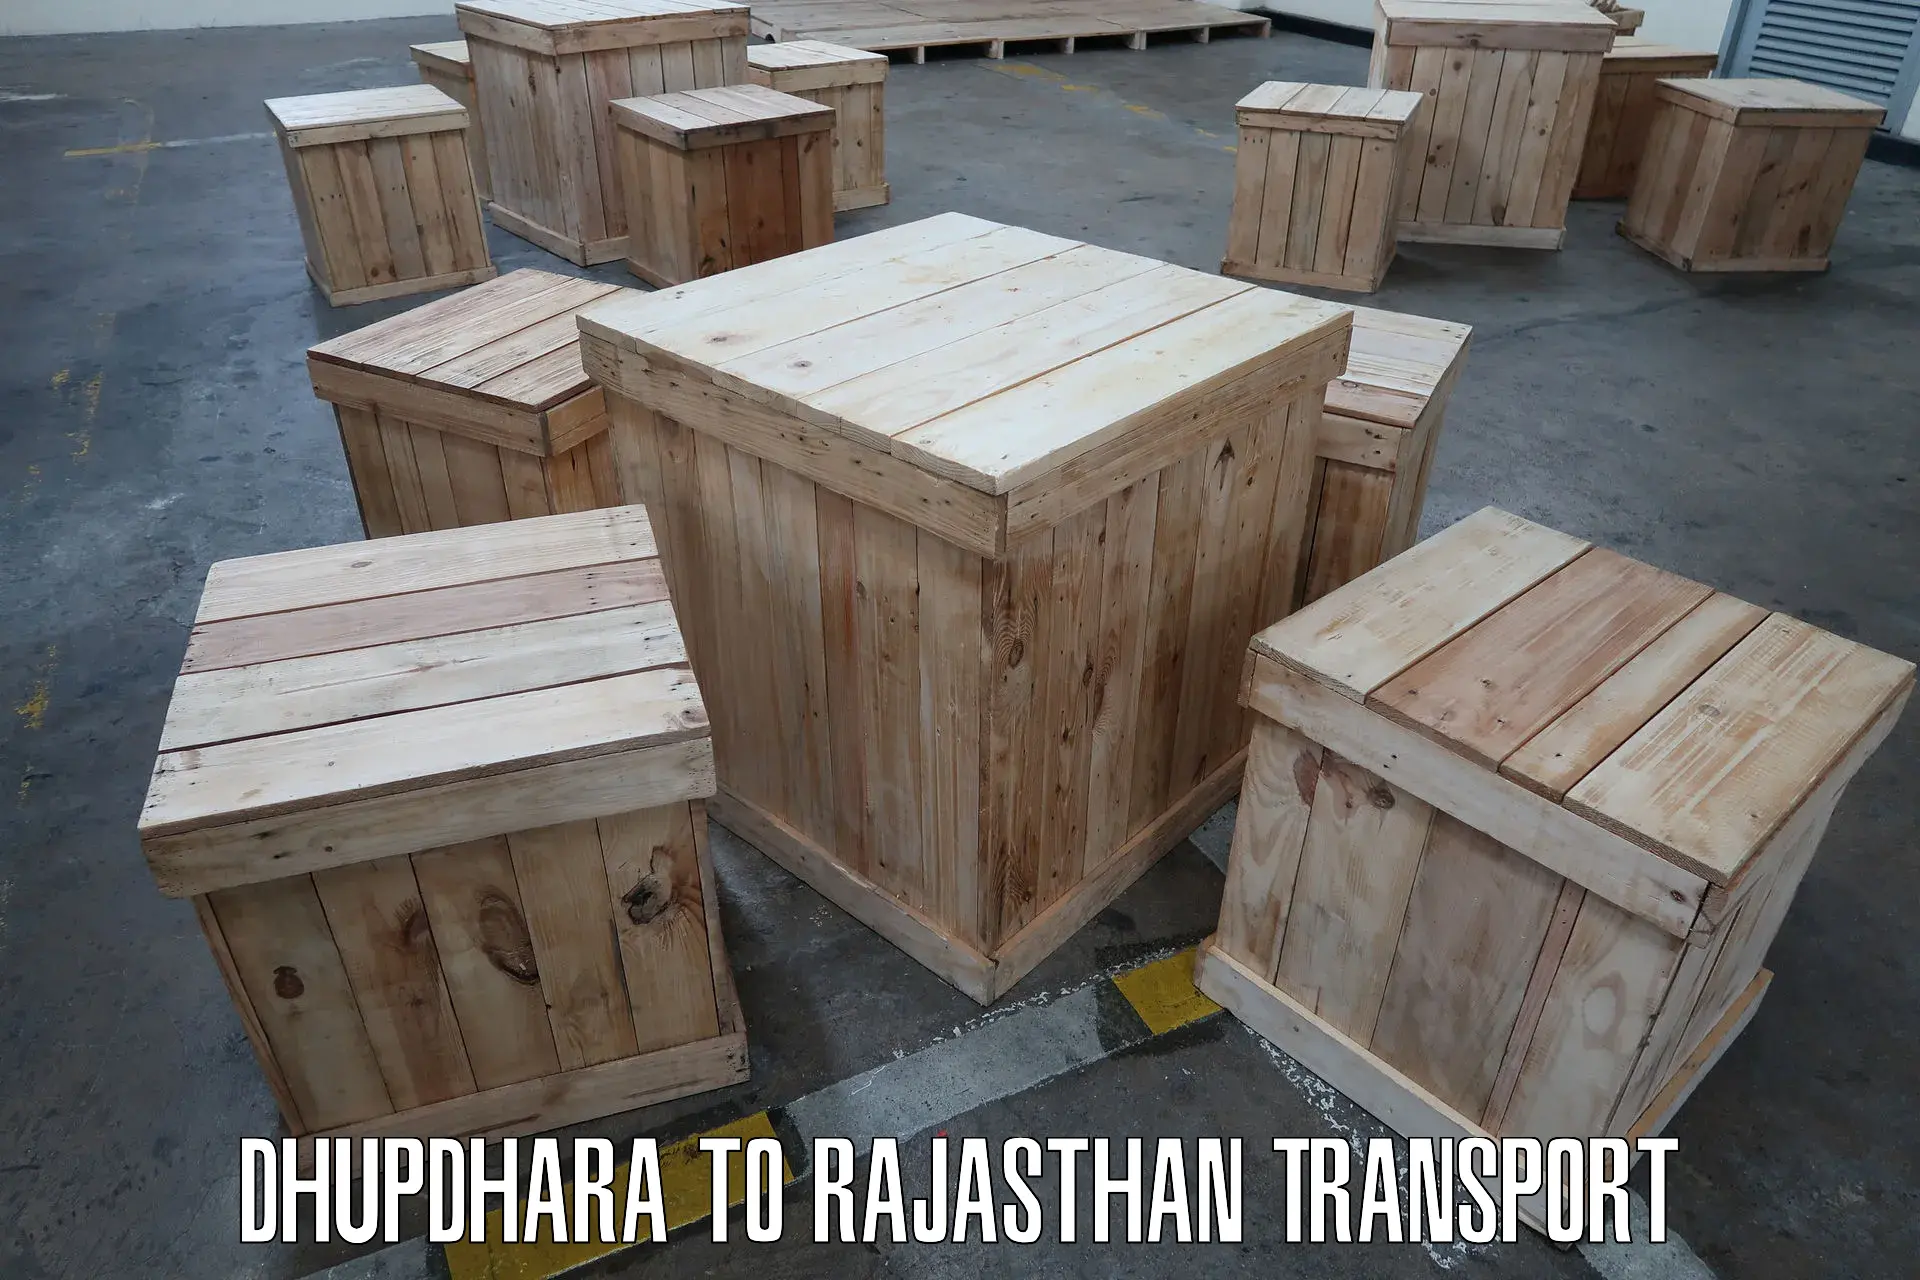 Transportation services in Dhupdhara to Gudha Gorji